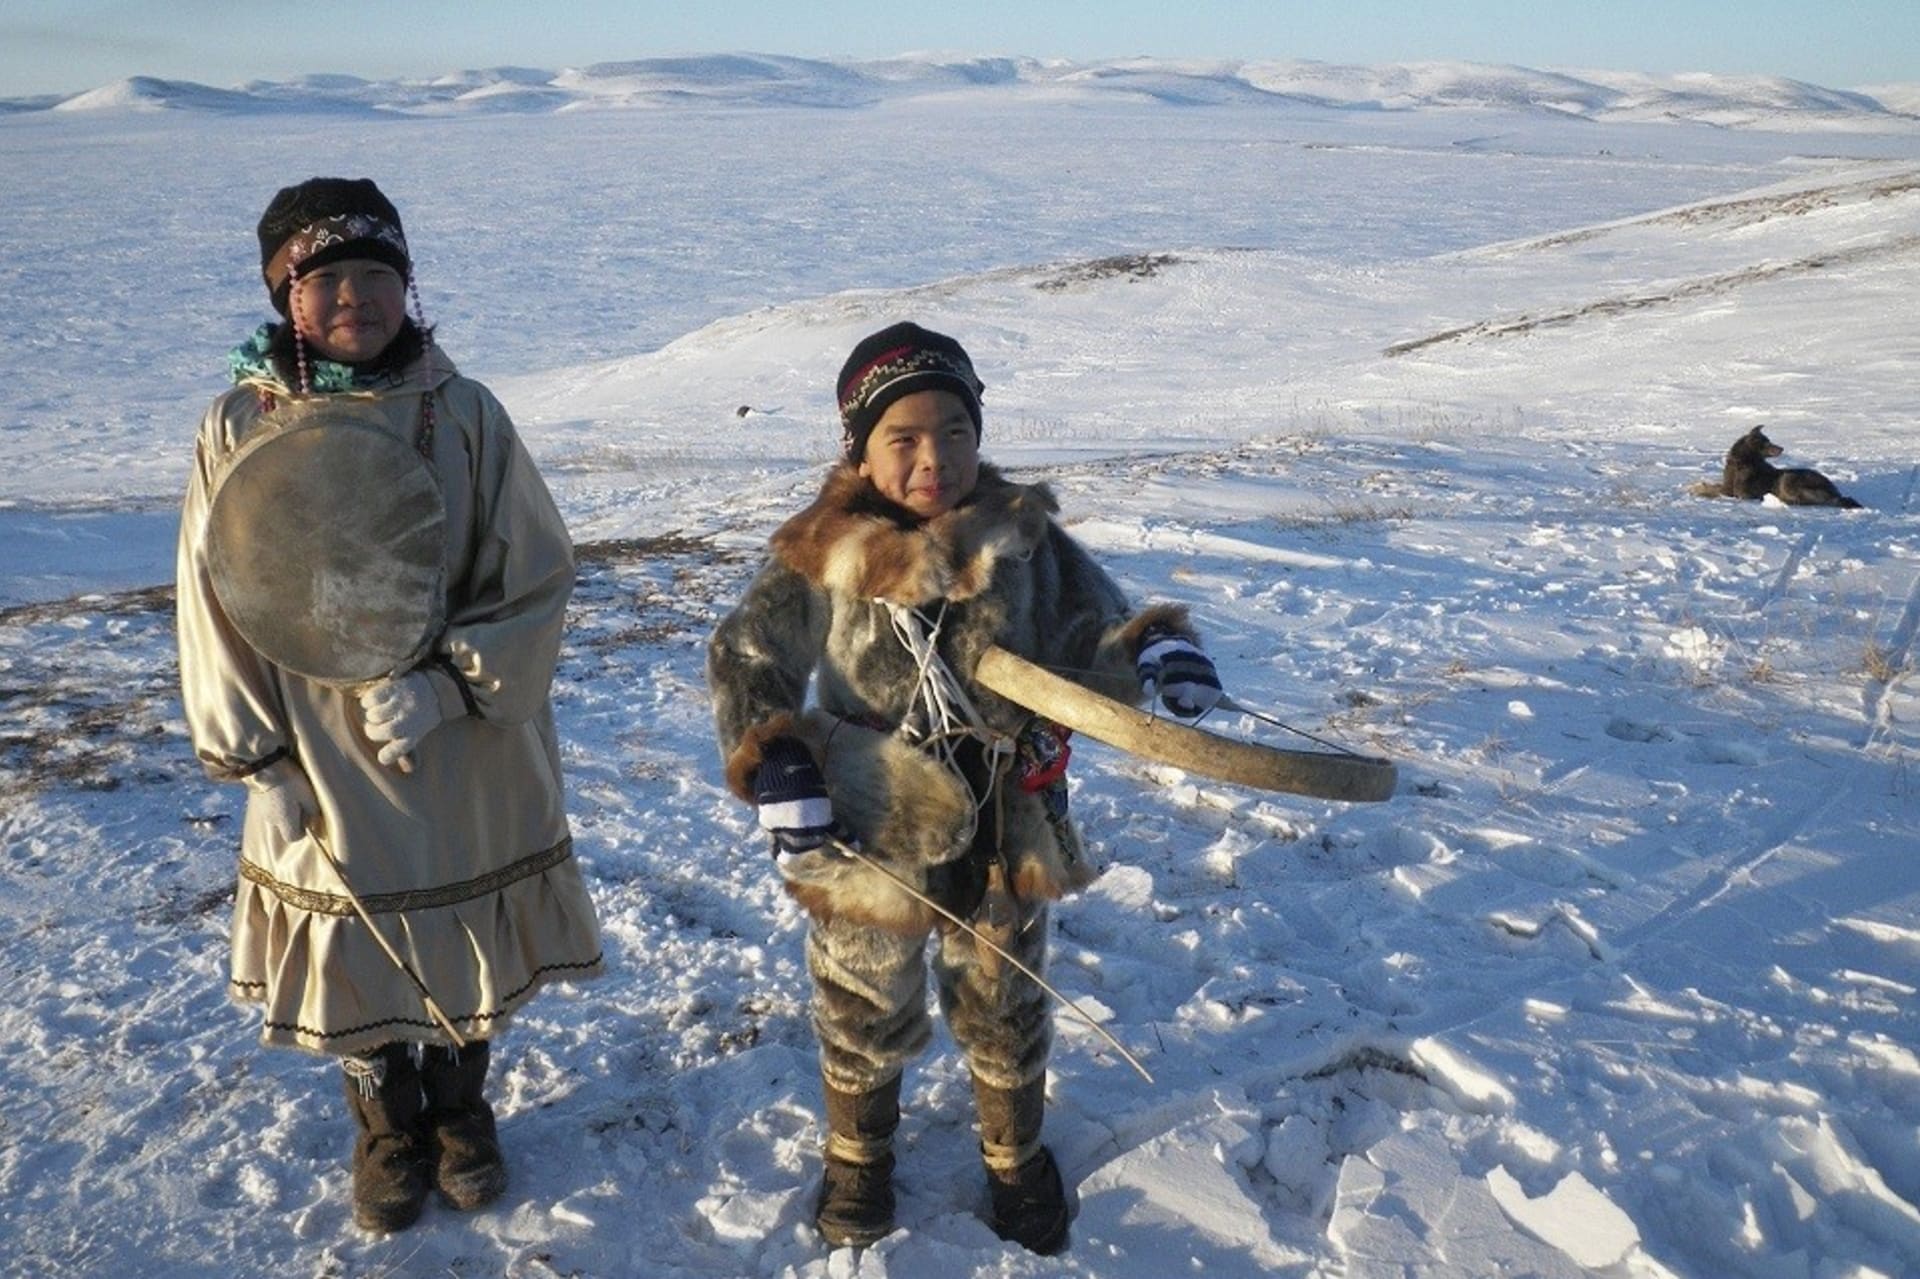 Děti tundry: Život v říši ledu